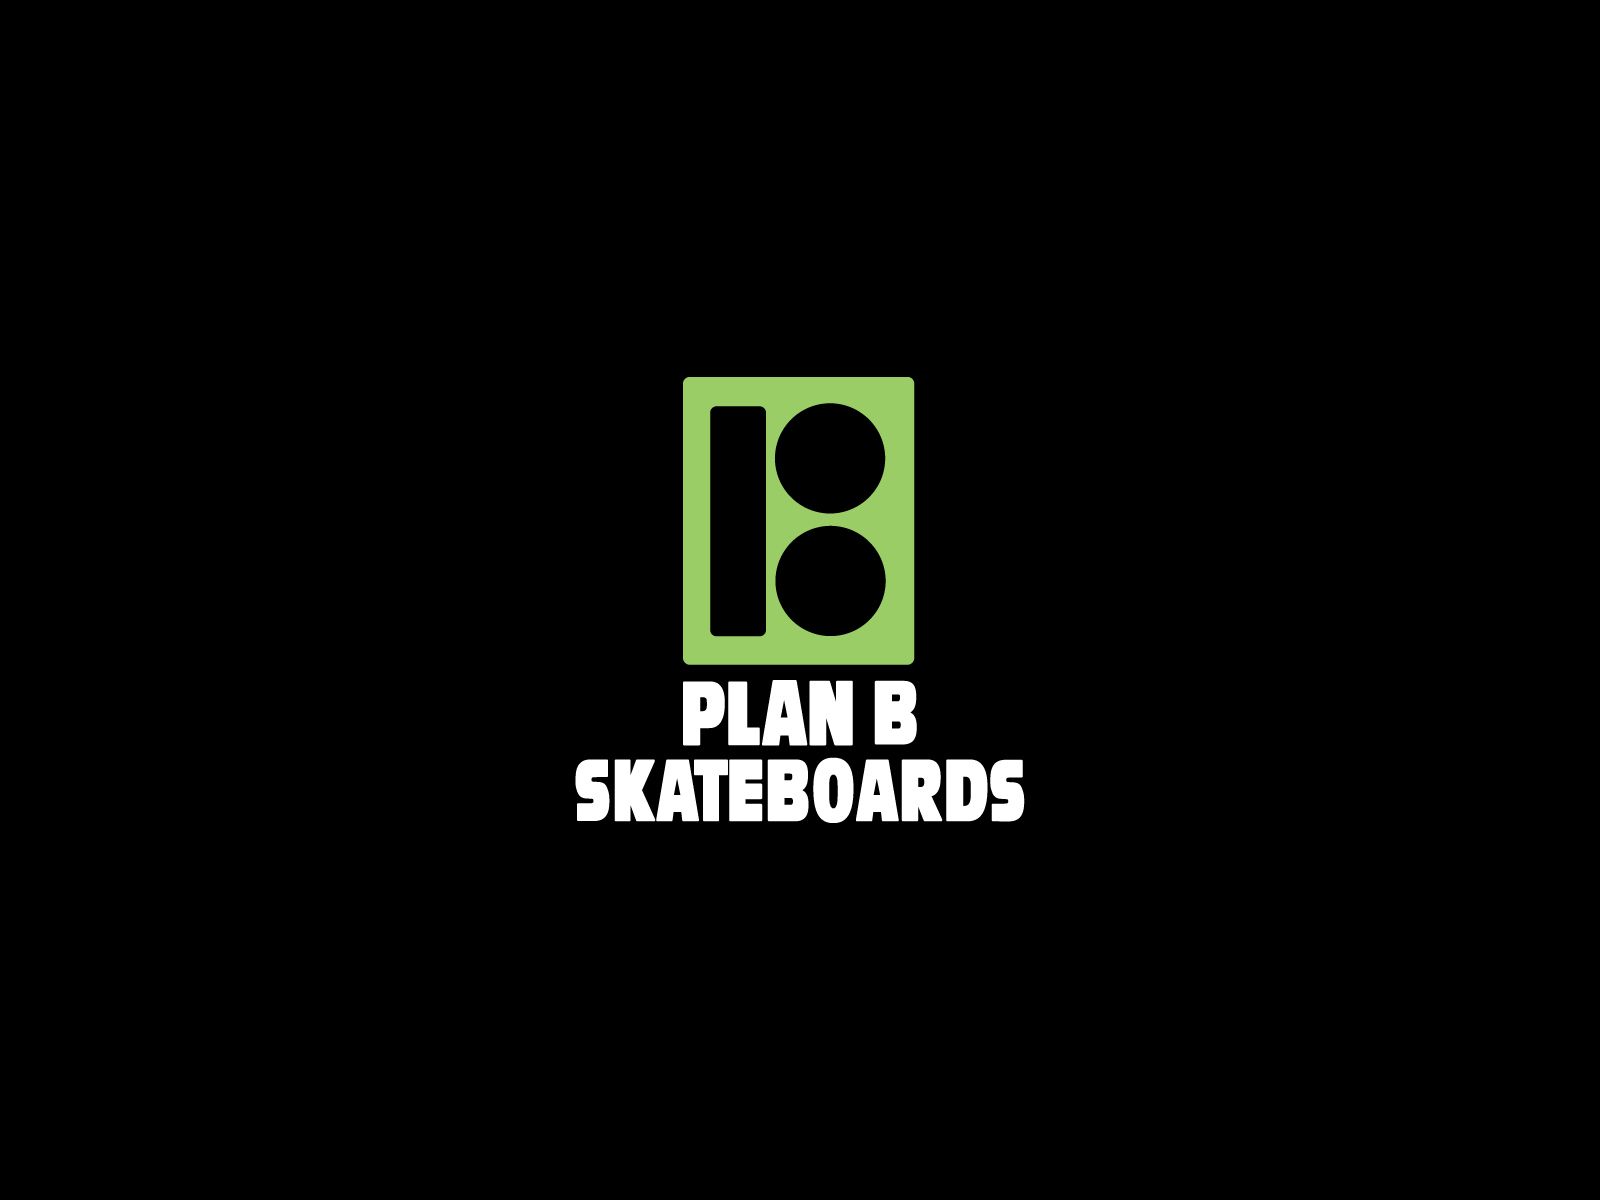 Skateboarding wallpapers, skateboard wallpapers, sk8 walls Find